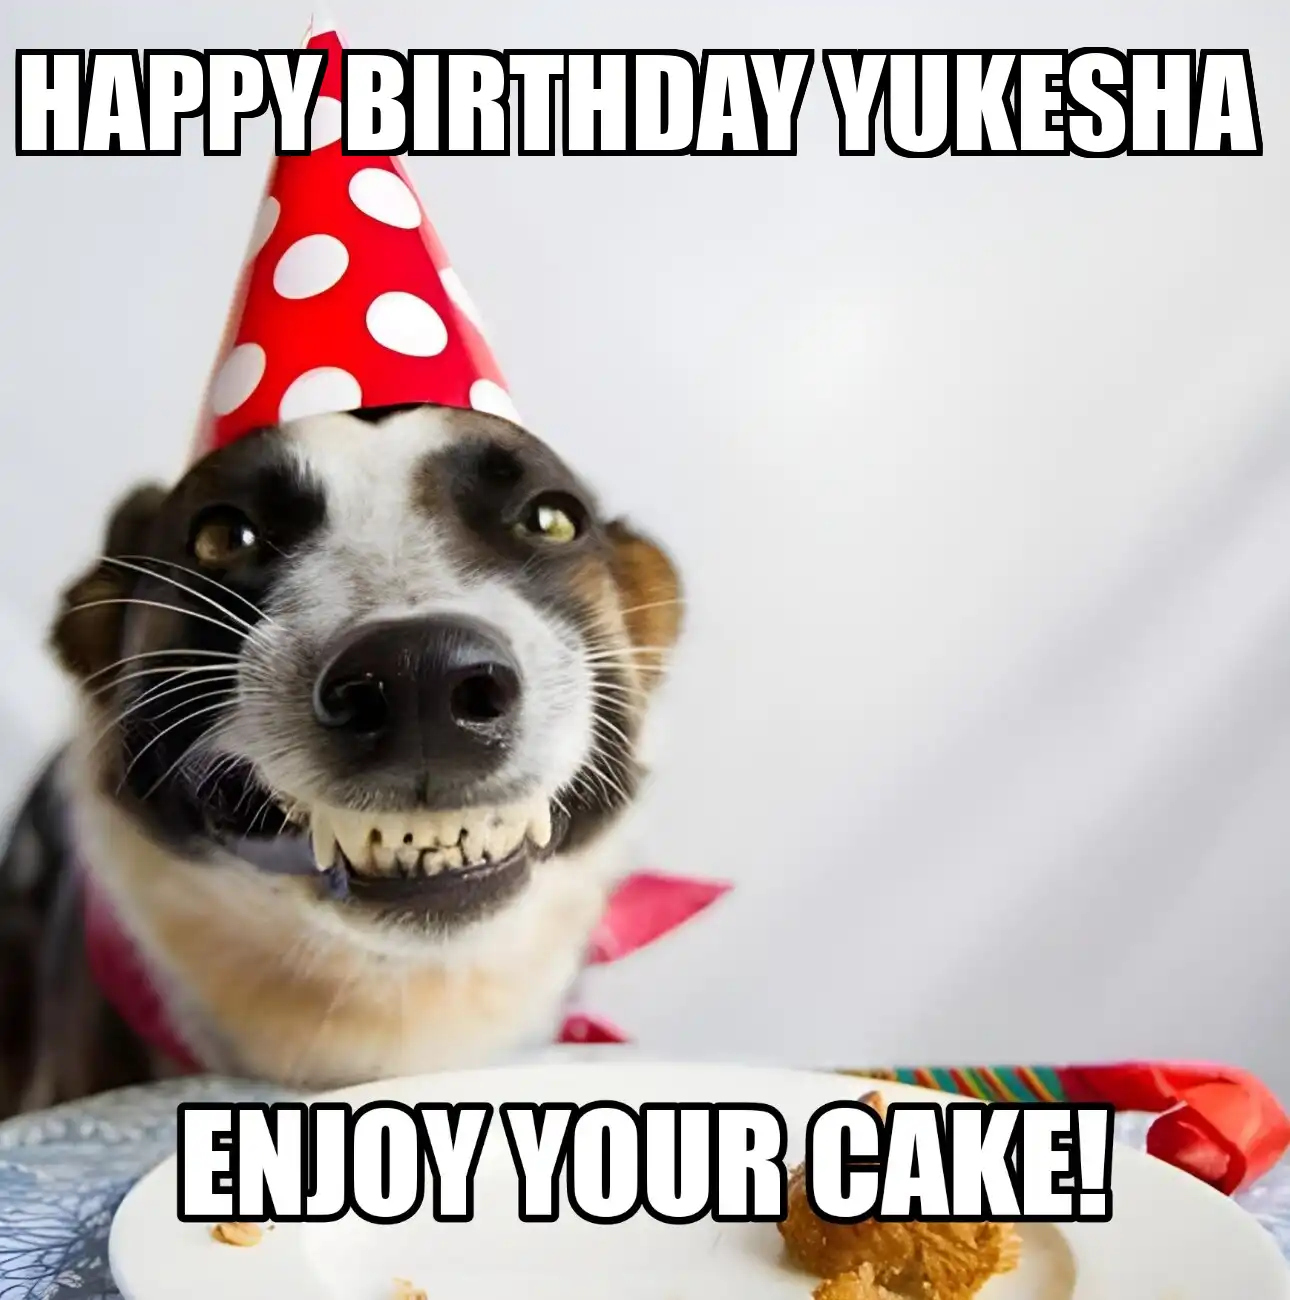 Happy Birthday Yukesha Enjoy Your Cake Dog Meme